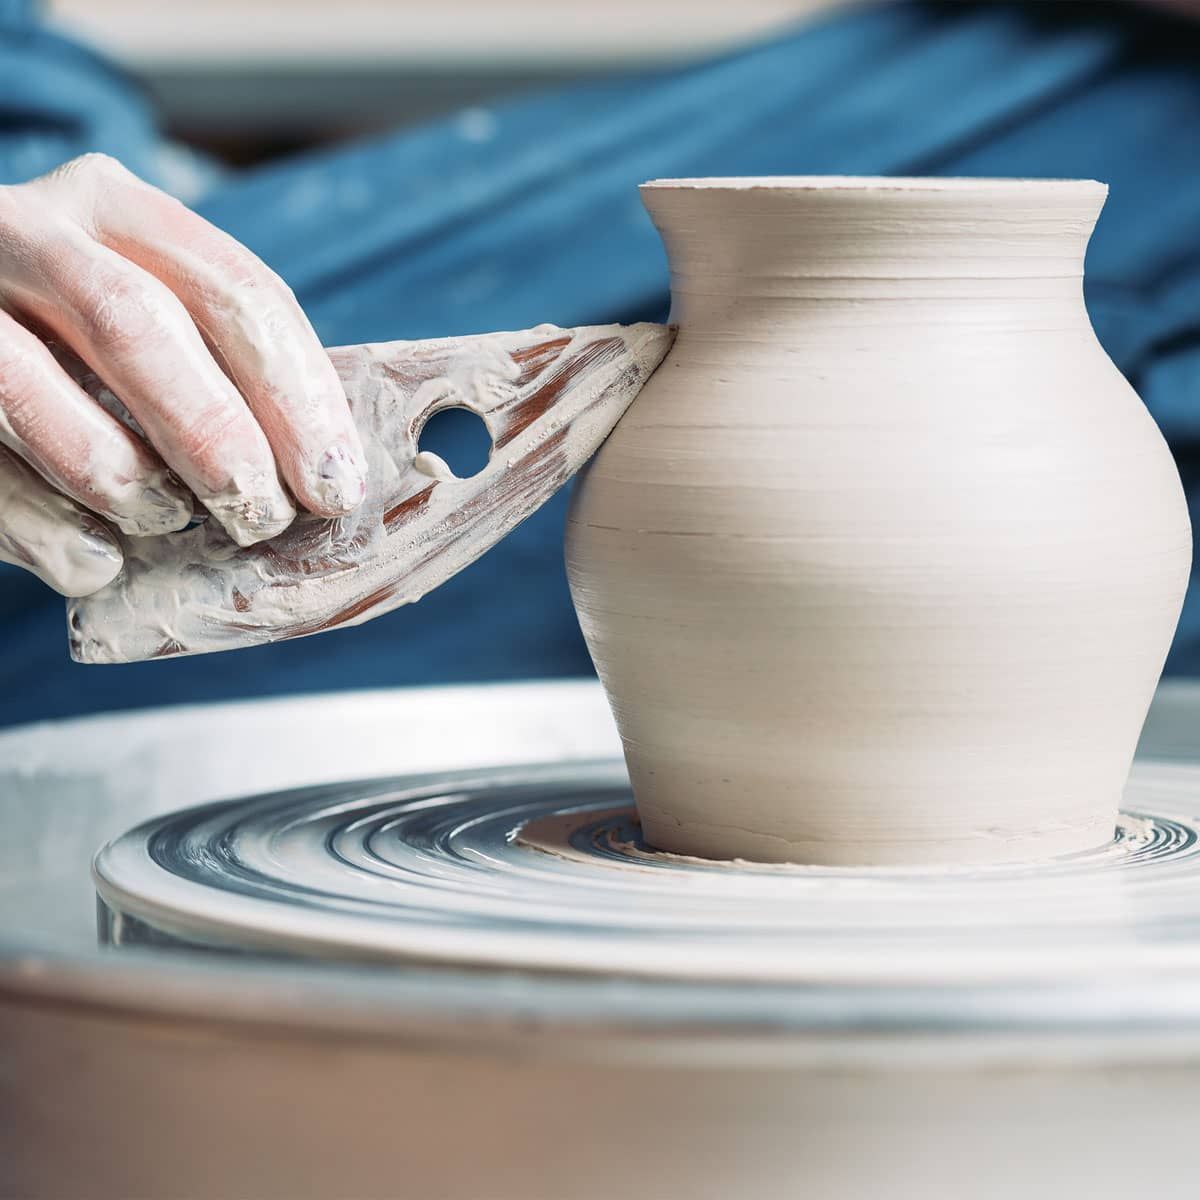 PTK Pottery Tool Kit– Rovin Ceramics